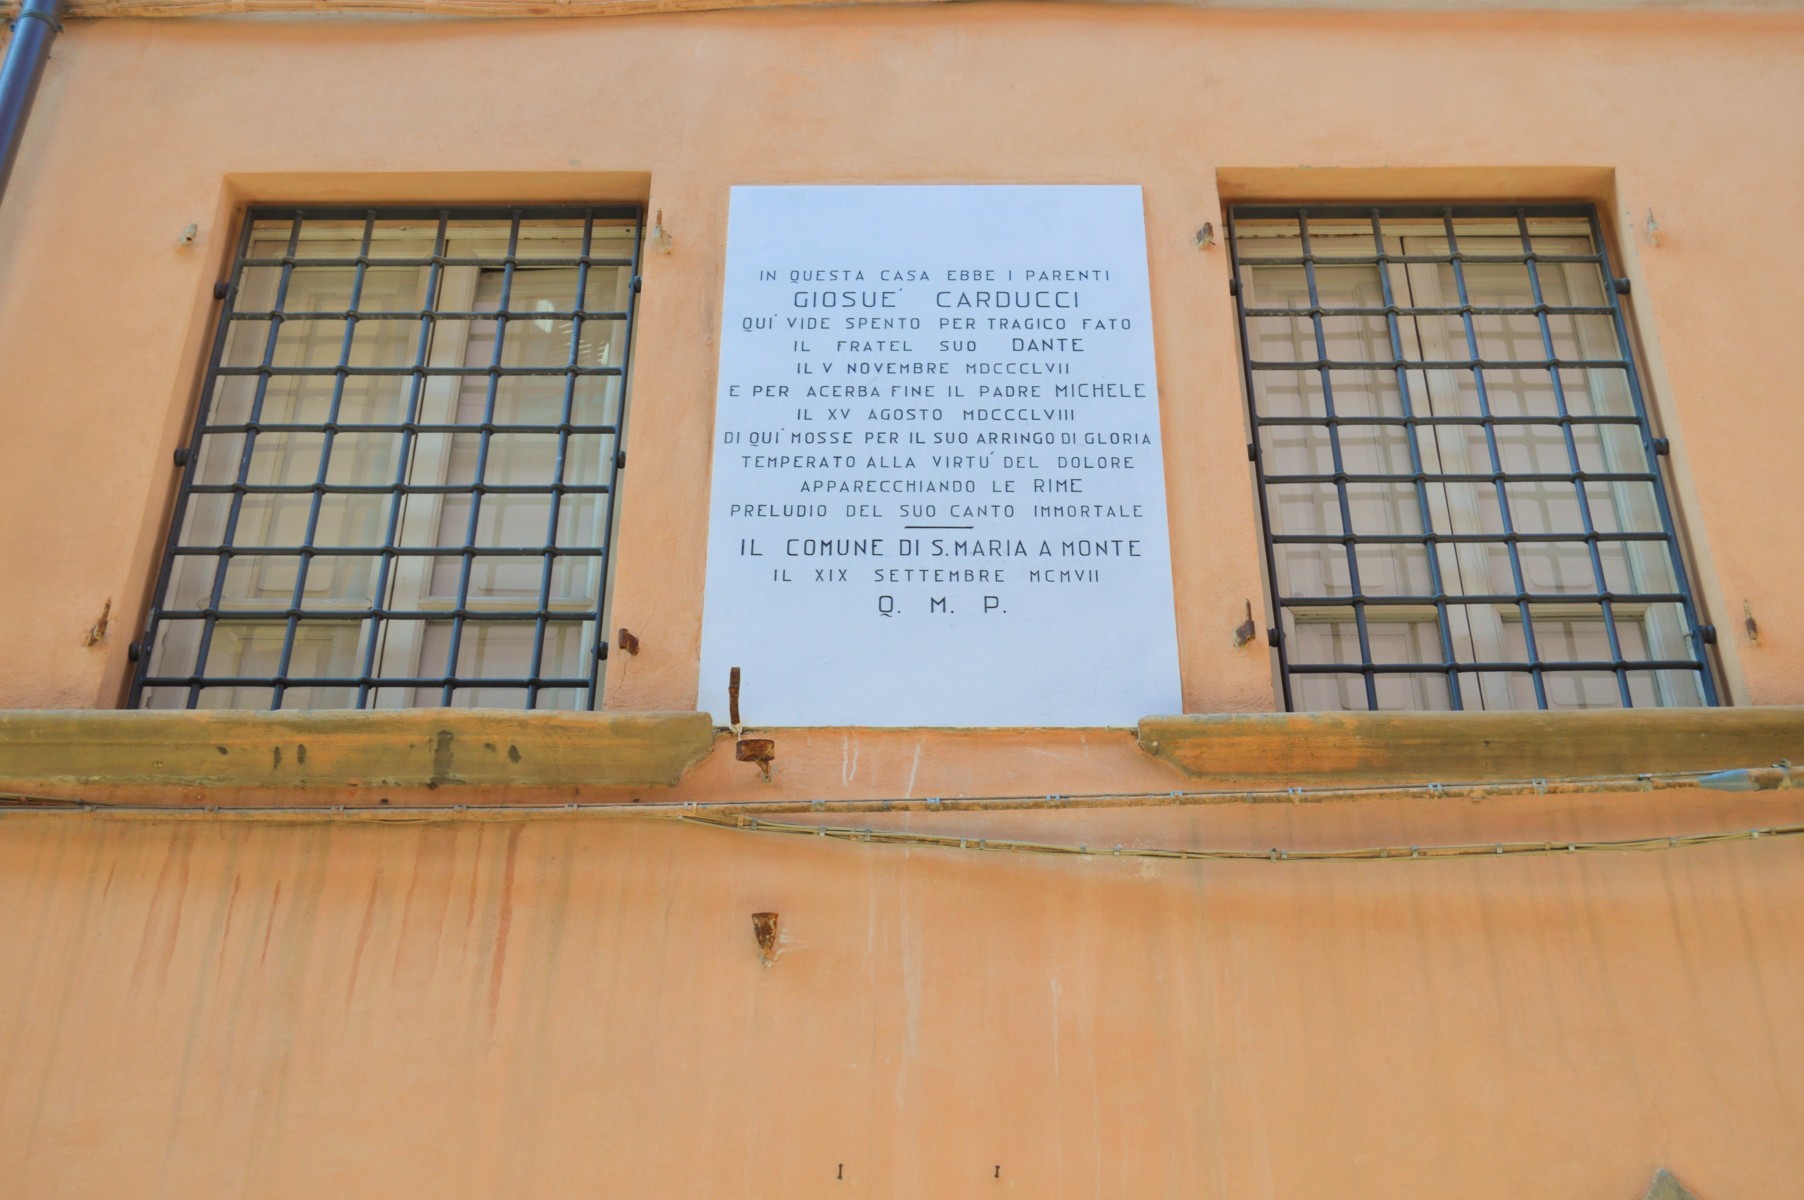 La placa que conmemora la presencia de los Carducci en Santa Maria a Monte